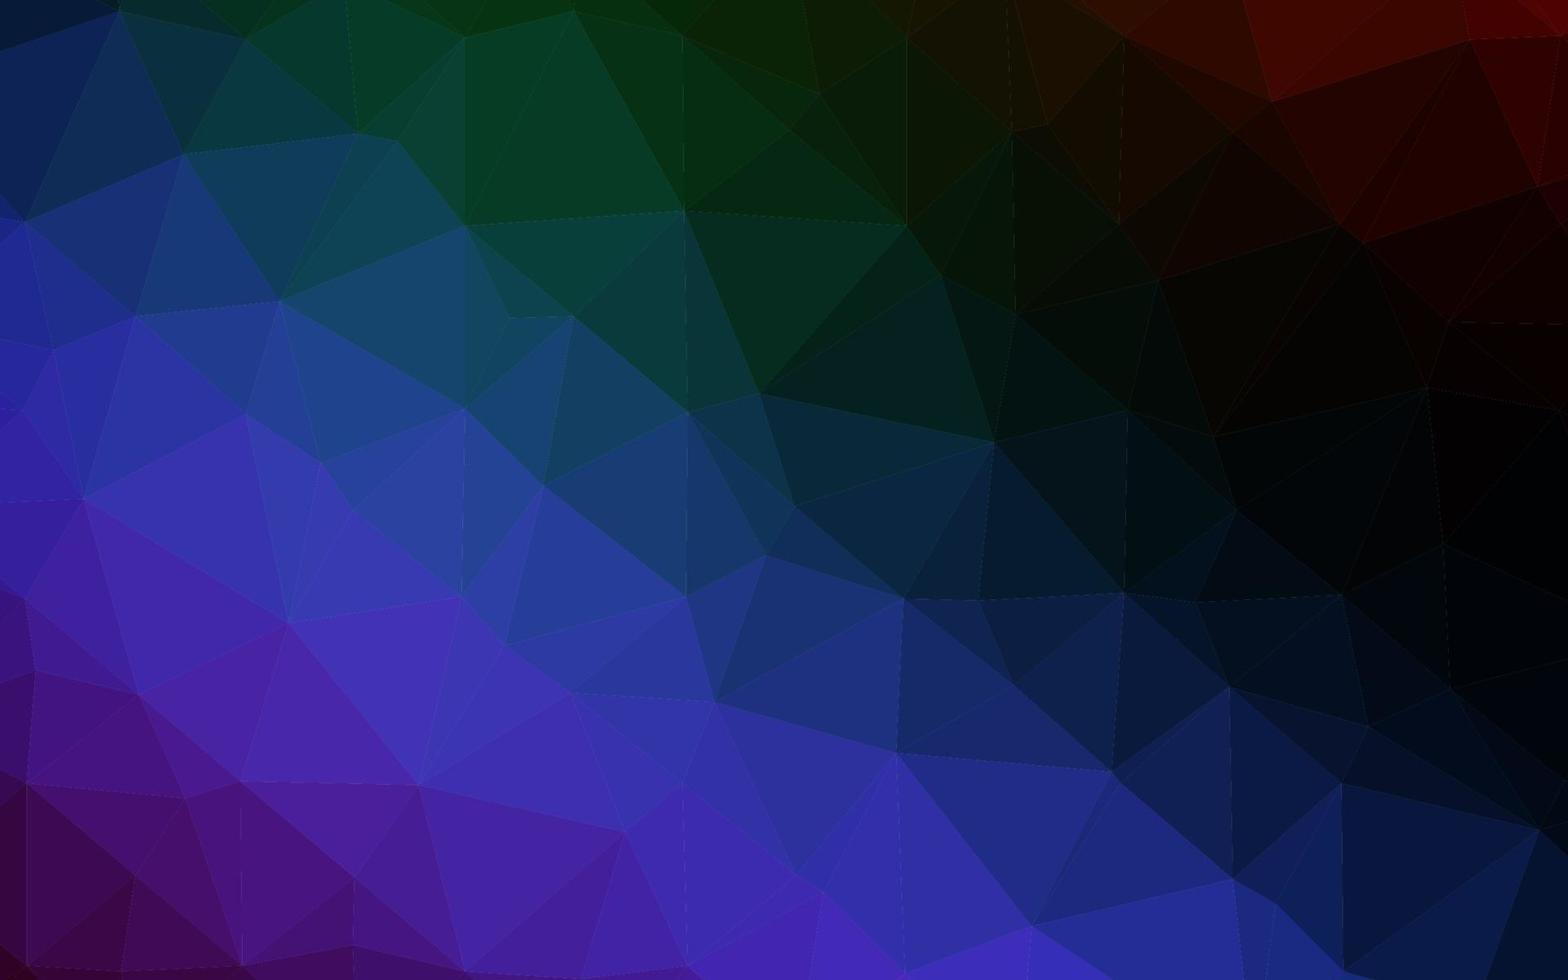 Dark Multicolor, Rainbow vector low poly texture.